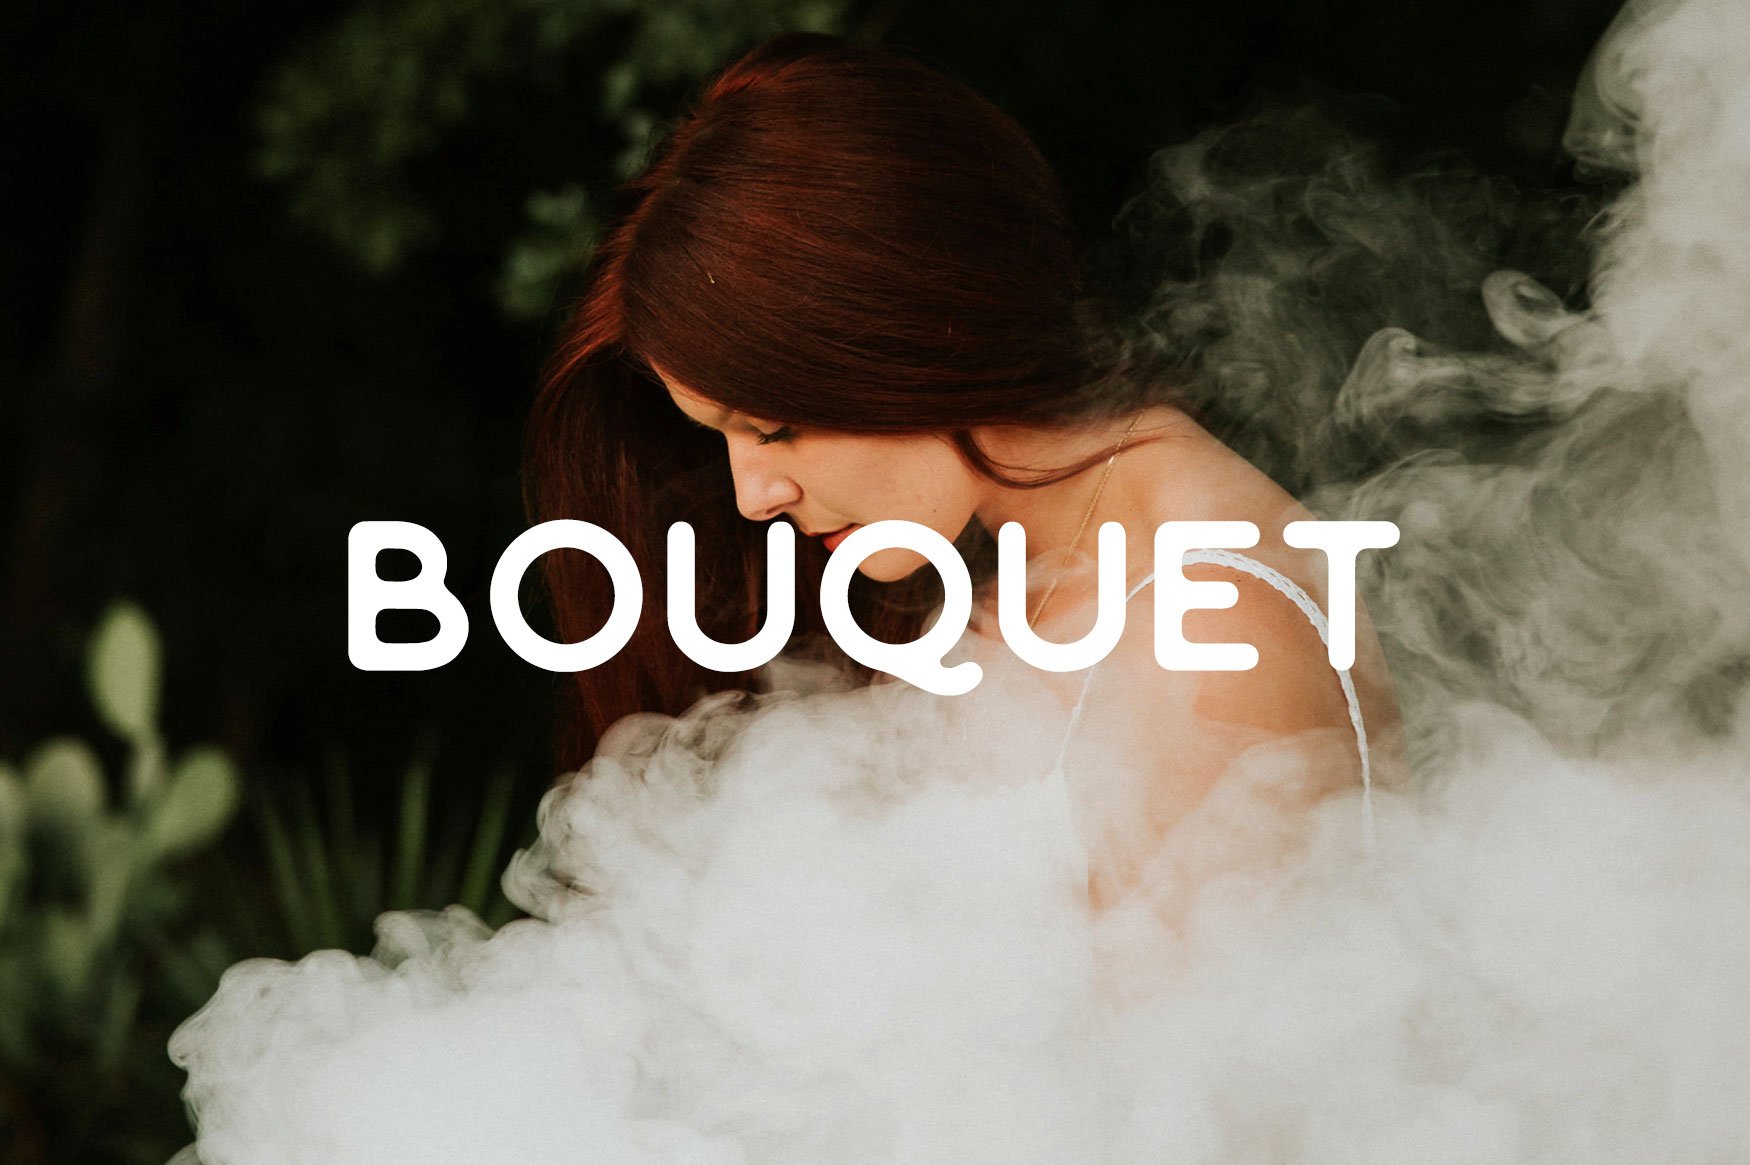 Bouquet Font cover image.